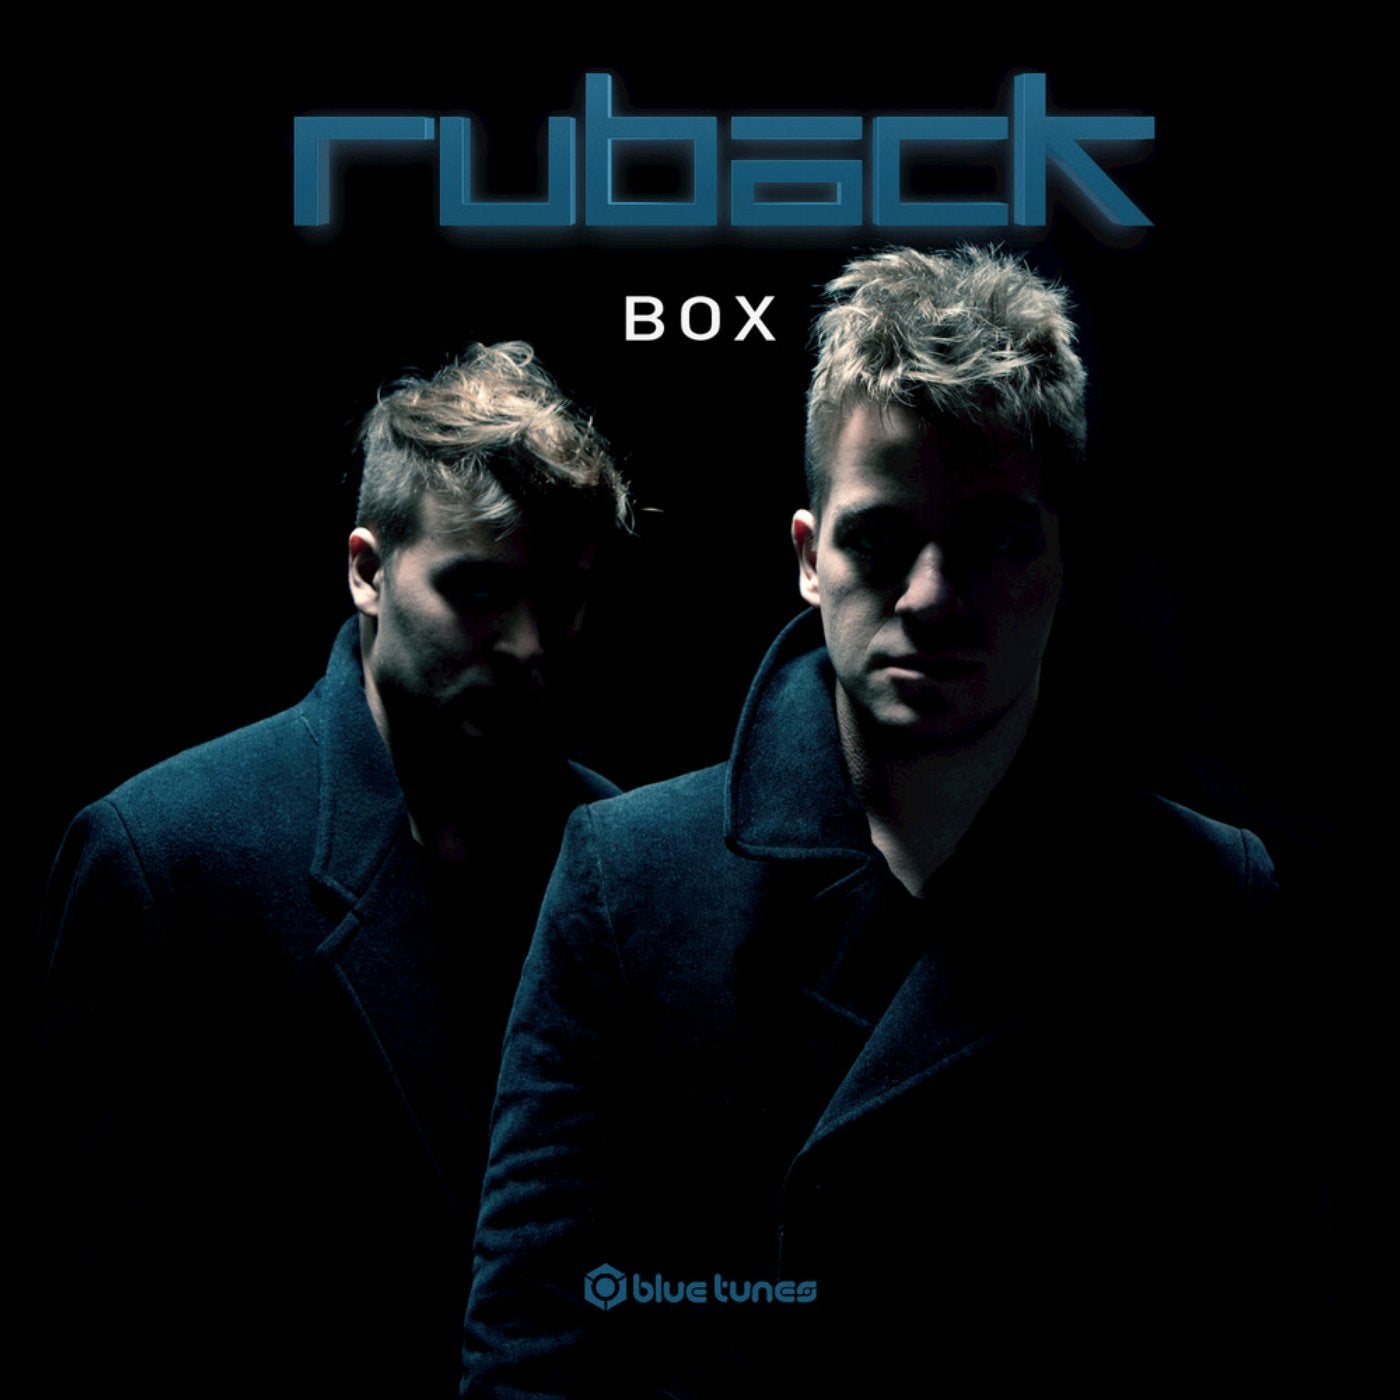 Ruback Box